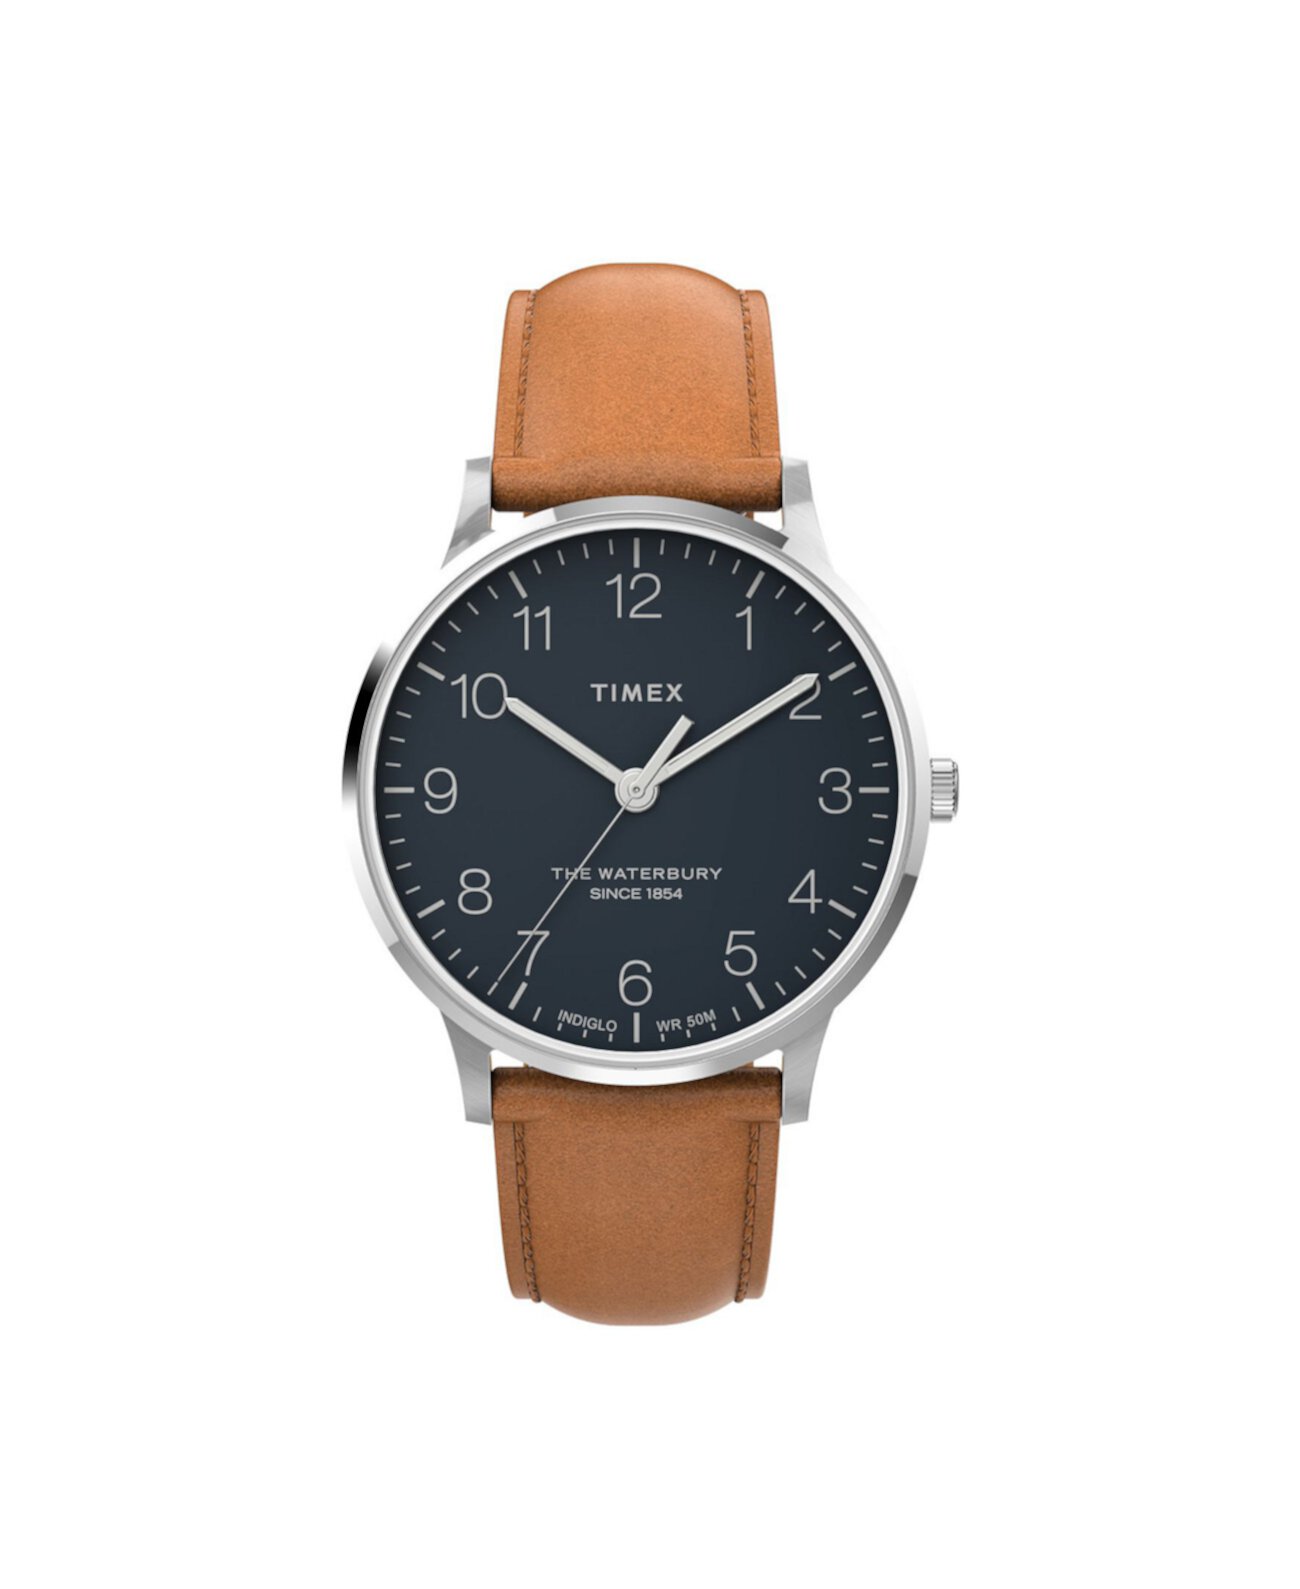 Мужские часы Waterbury с коричневым кожаным ремешком, 40 мм Timex